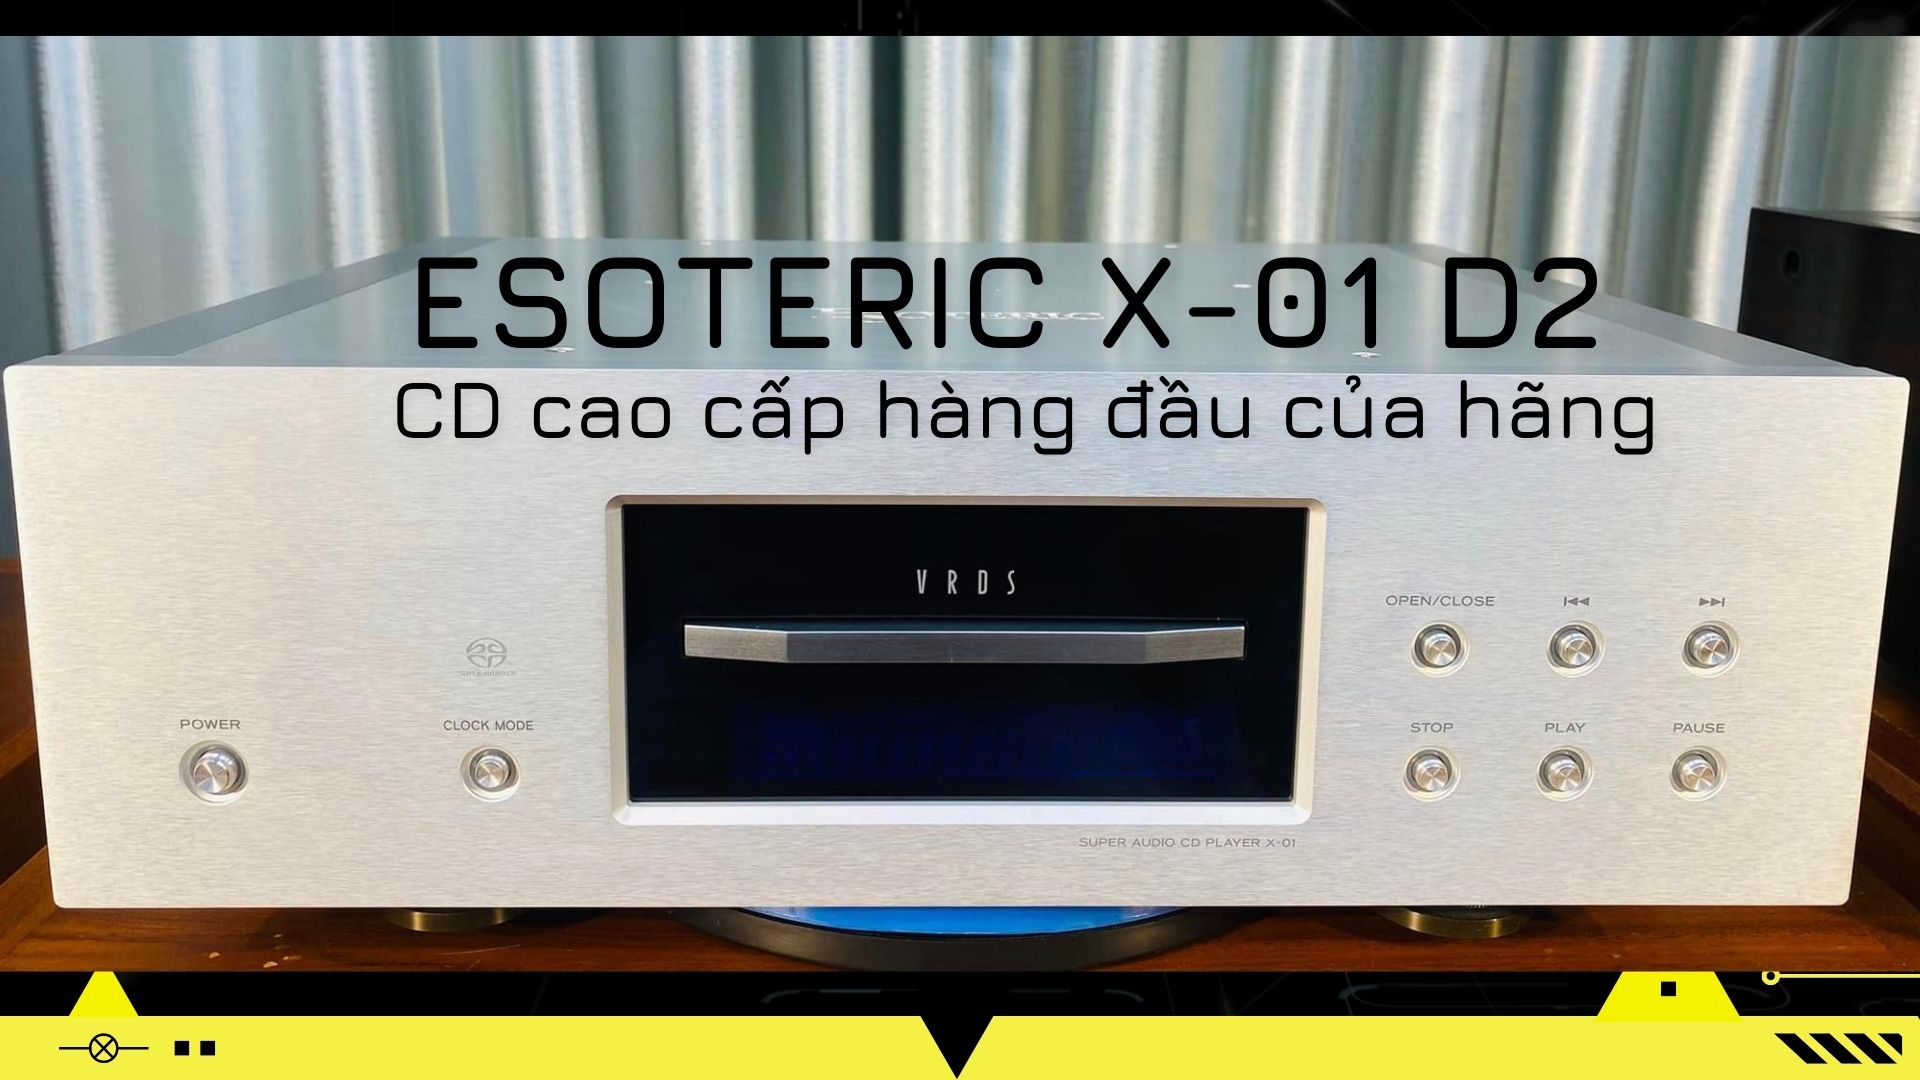 ESOTERIC X-01 D2